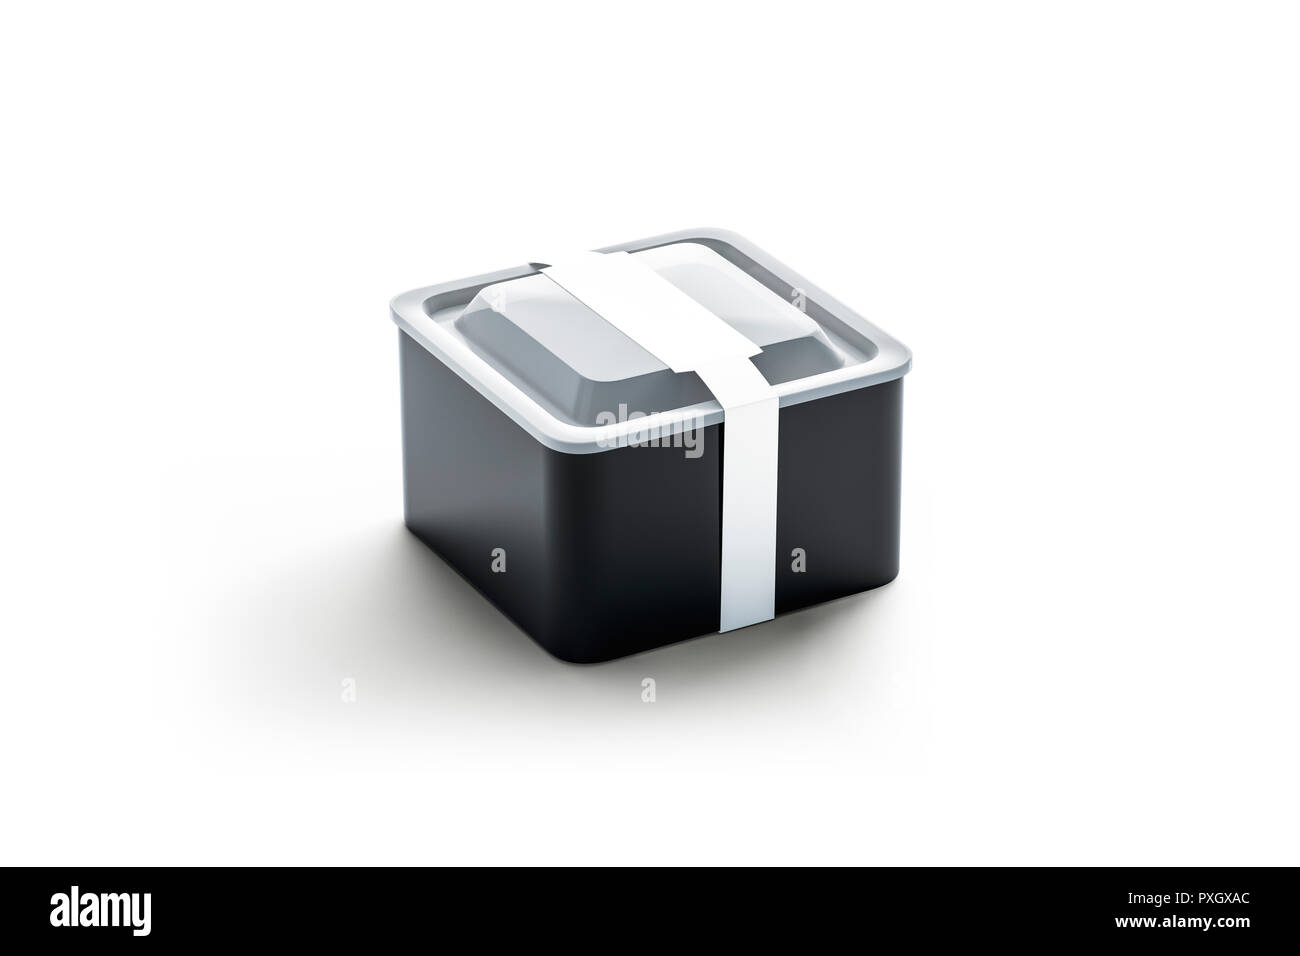 Leere schwarze Quadrat verfügbaren Container mit weißen rechteckigen Etikett Mockup, 3D-Rendering. Leere nehmen Kunststoff fach Mock up. Klar Lunch Box mit paketaufkleber Vorlage. Stockfoto